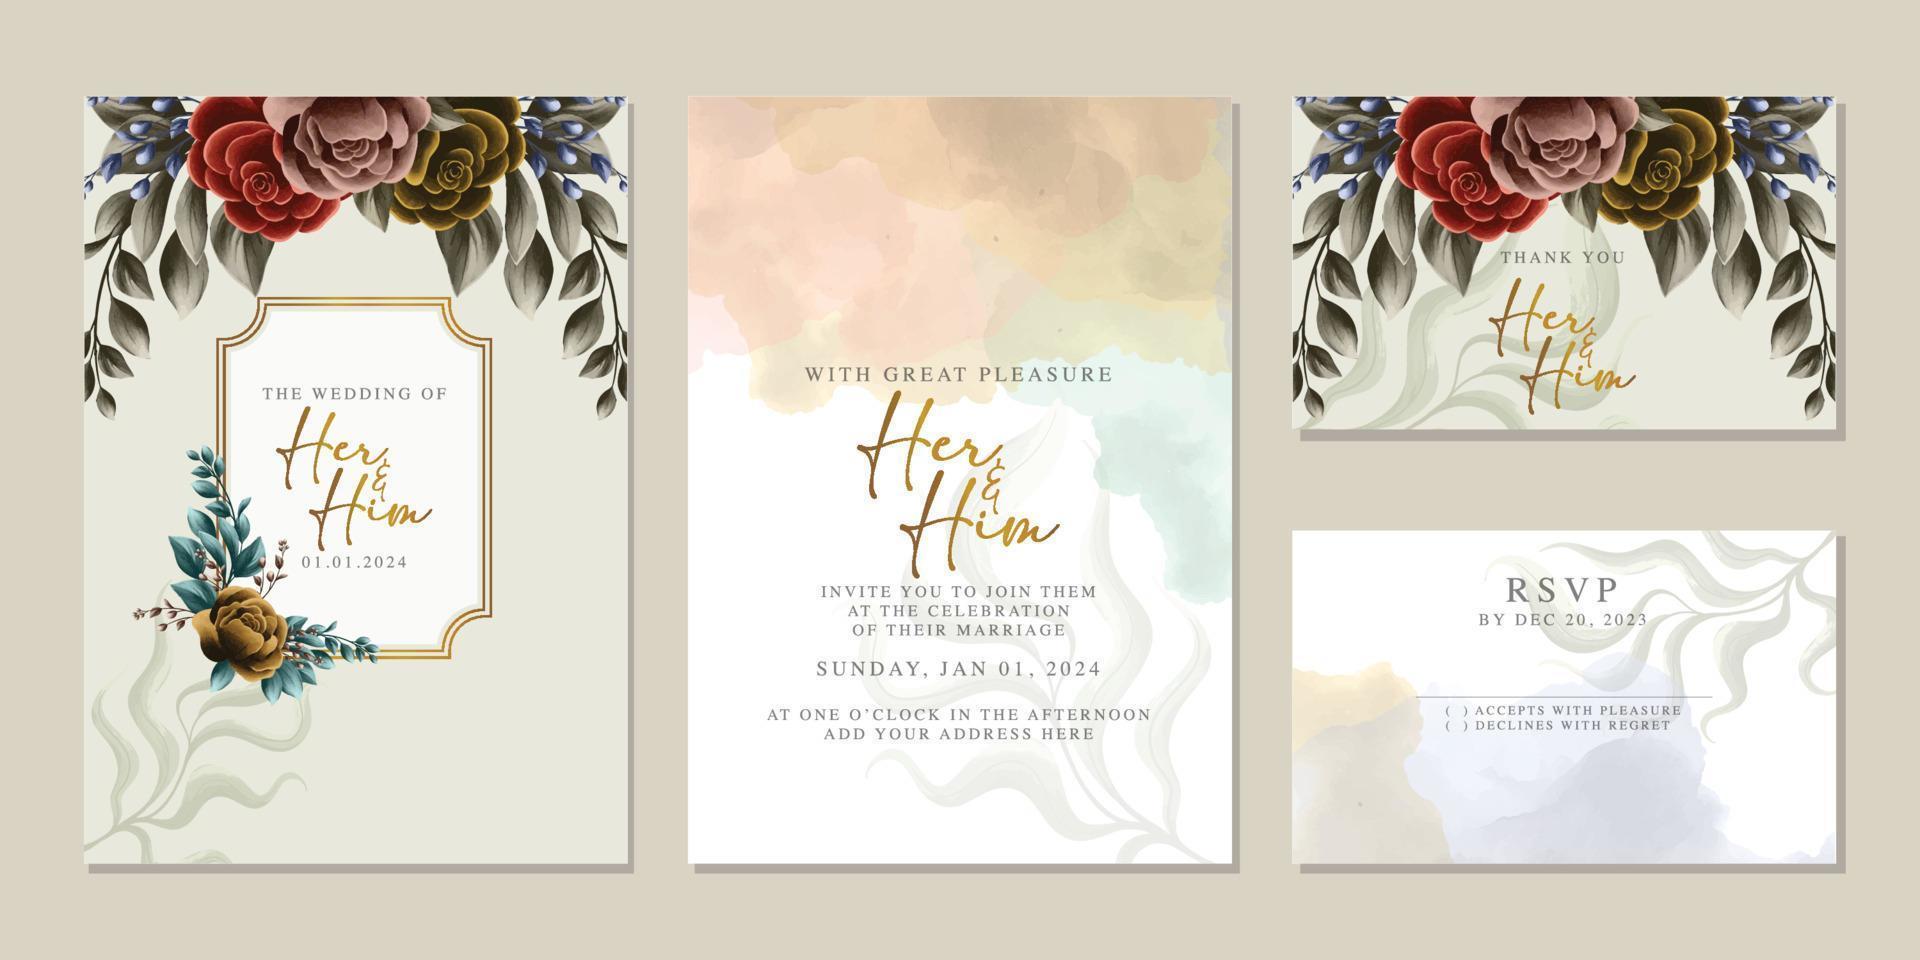 Elegante florale Hochzeitseinladungskarte in skandinavischen Farben vektor